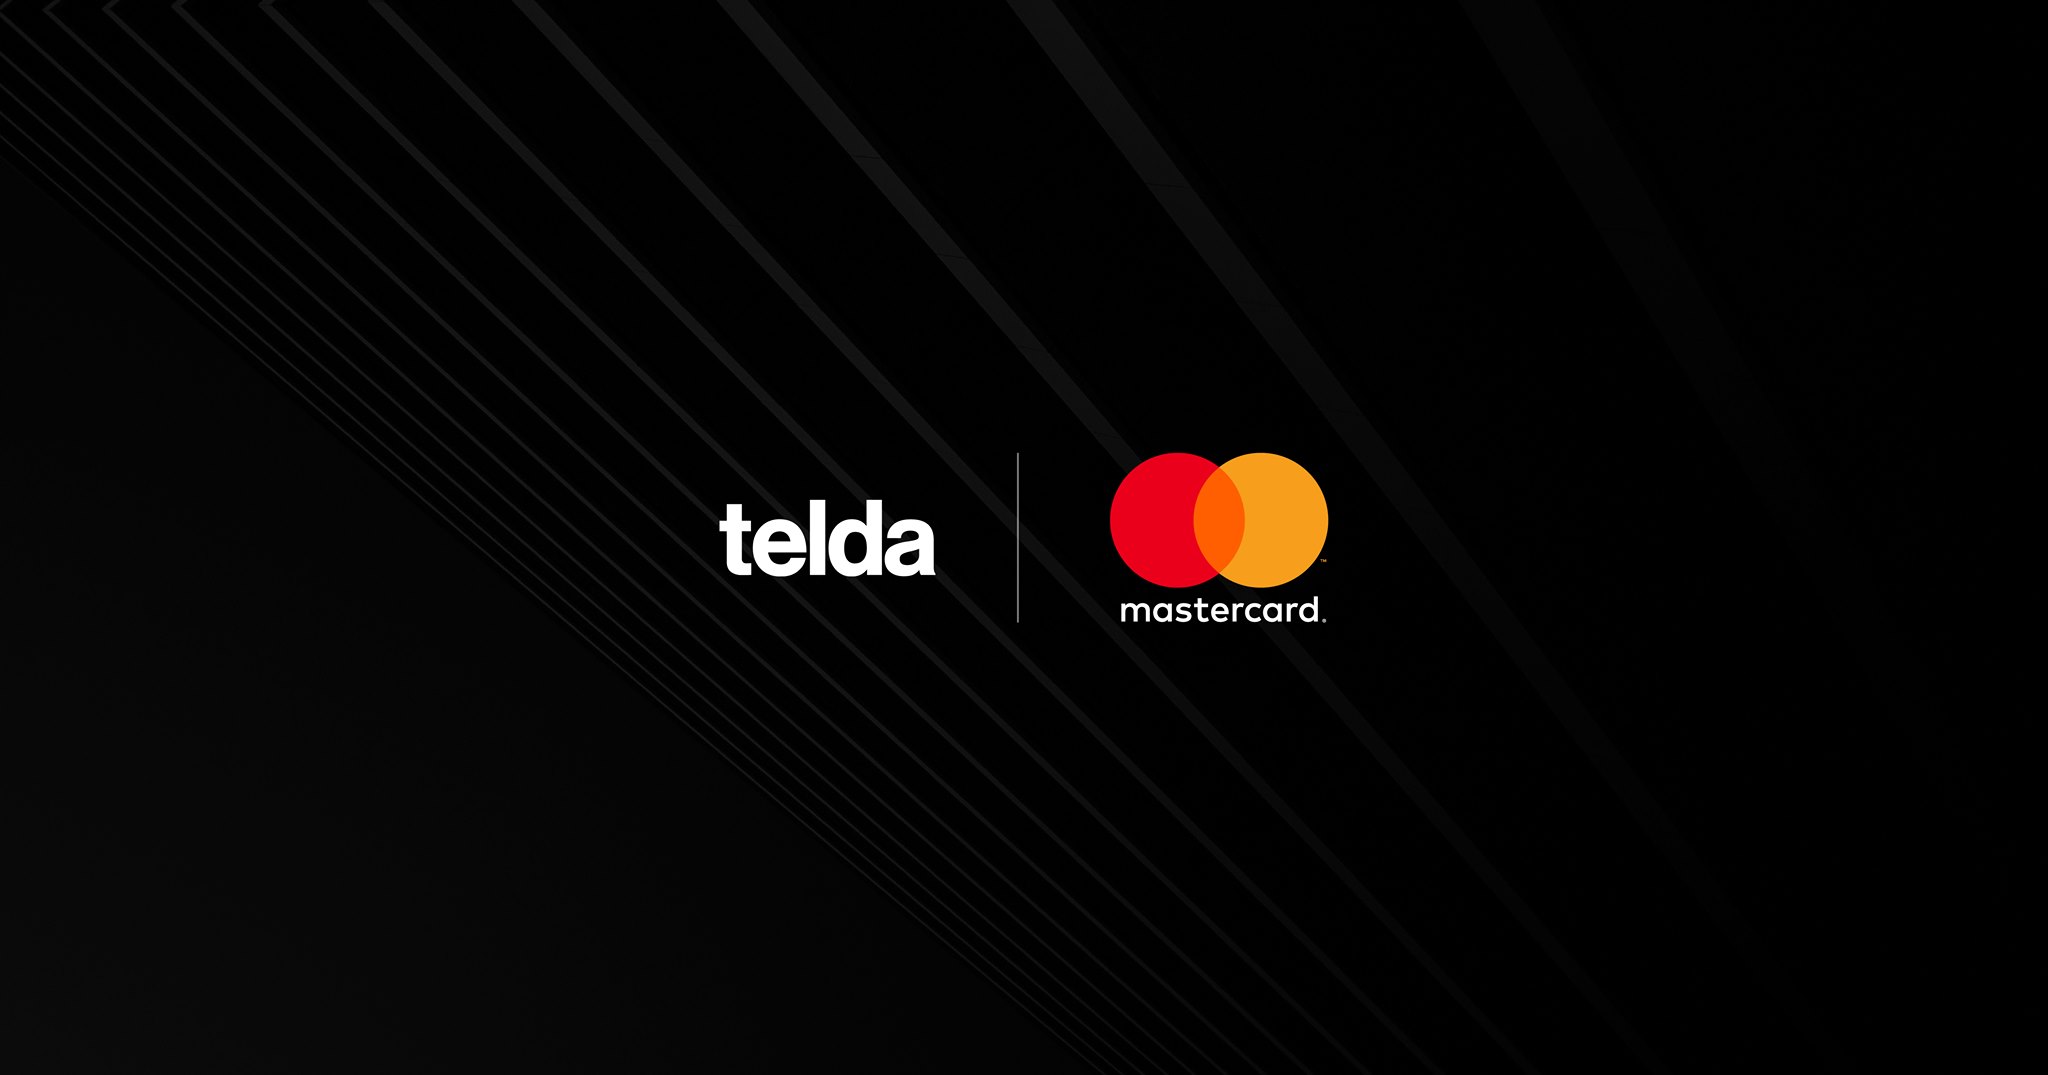 تيلدا اول بنك الكتروني في مصر بالتعاون مع ماستر كارد Telda